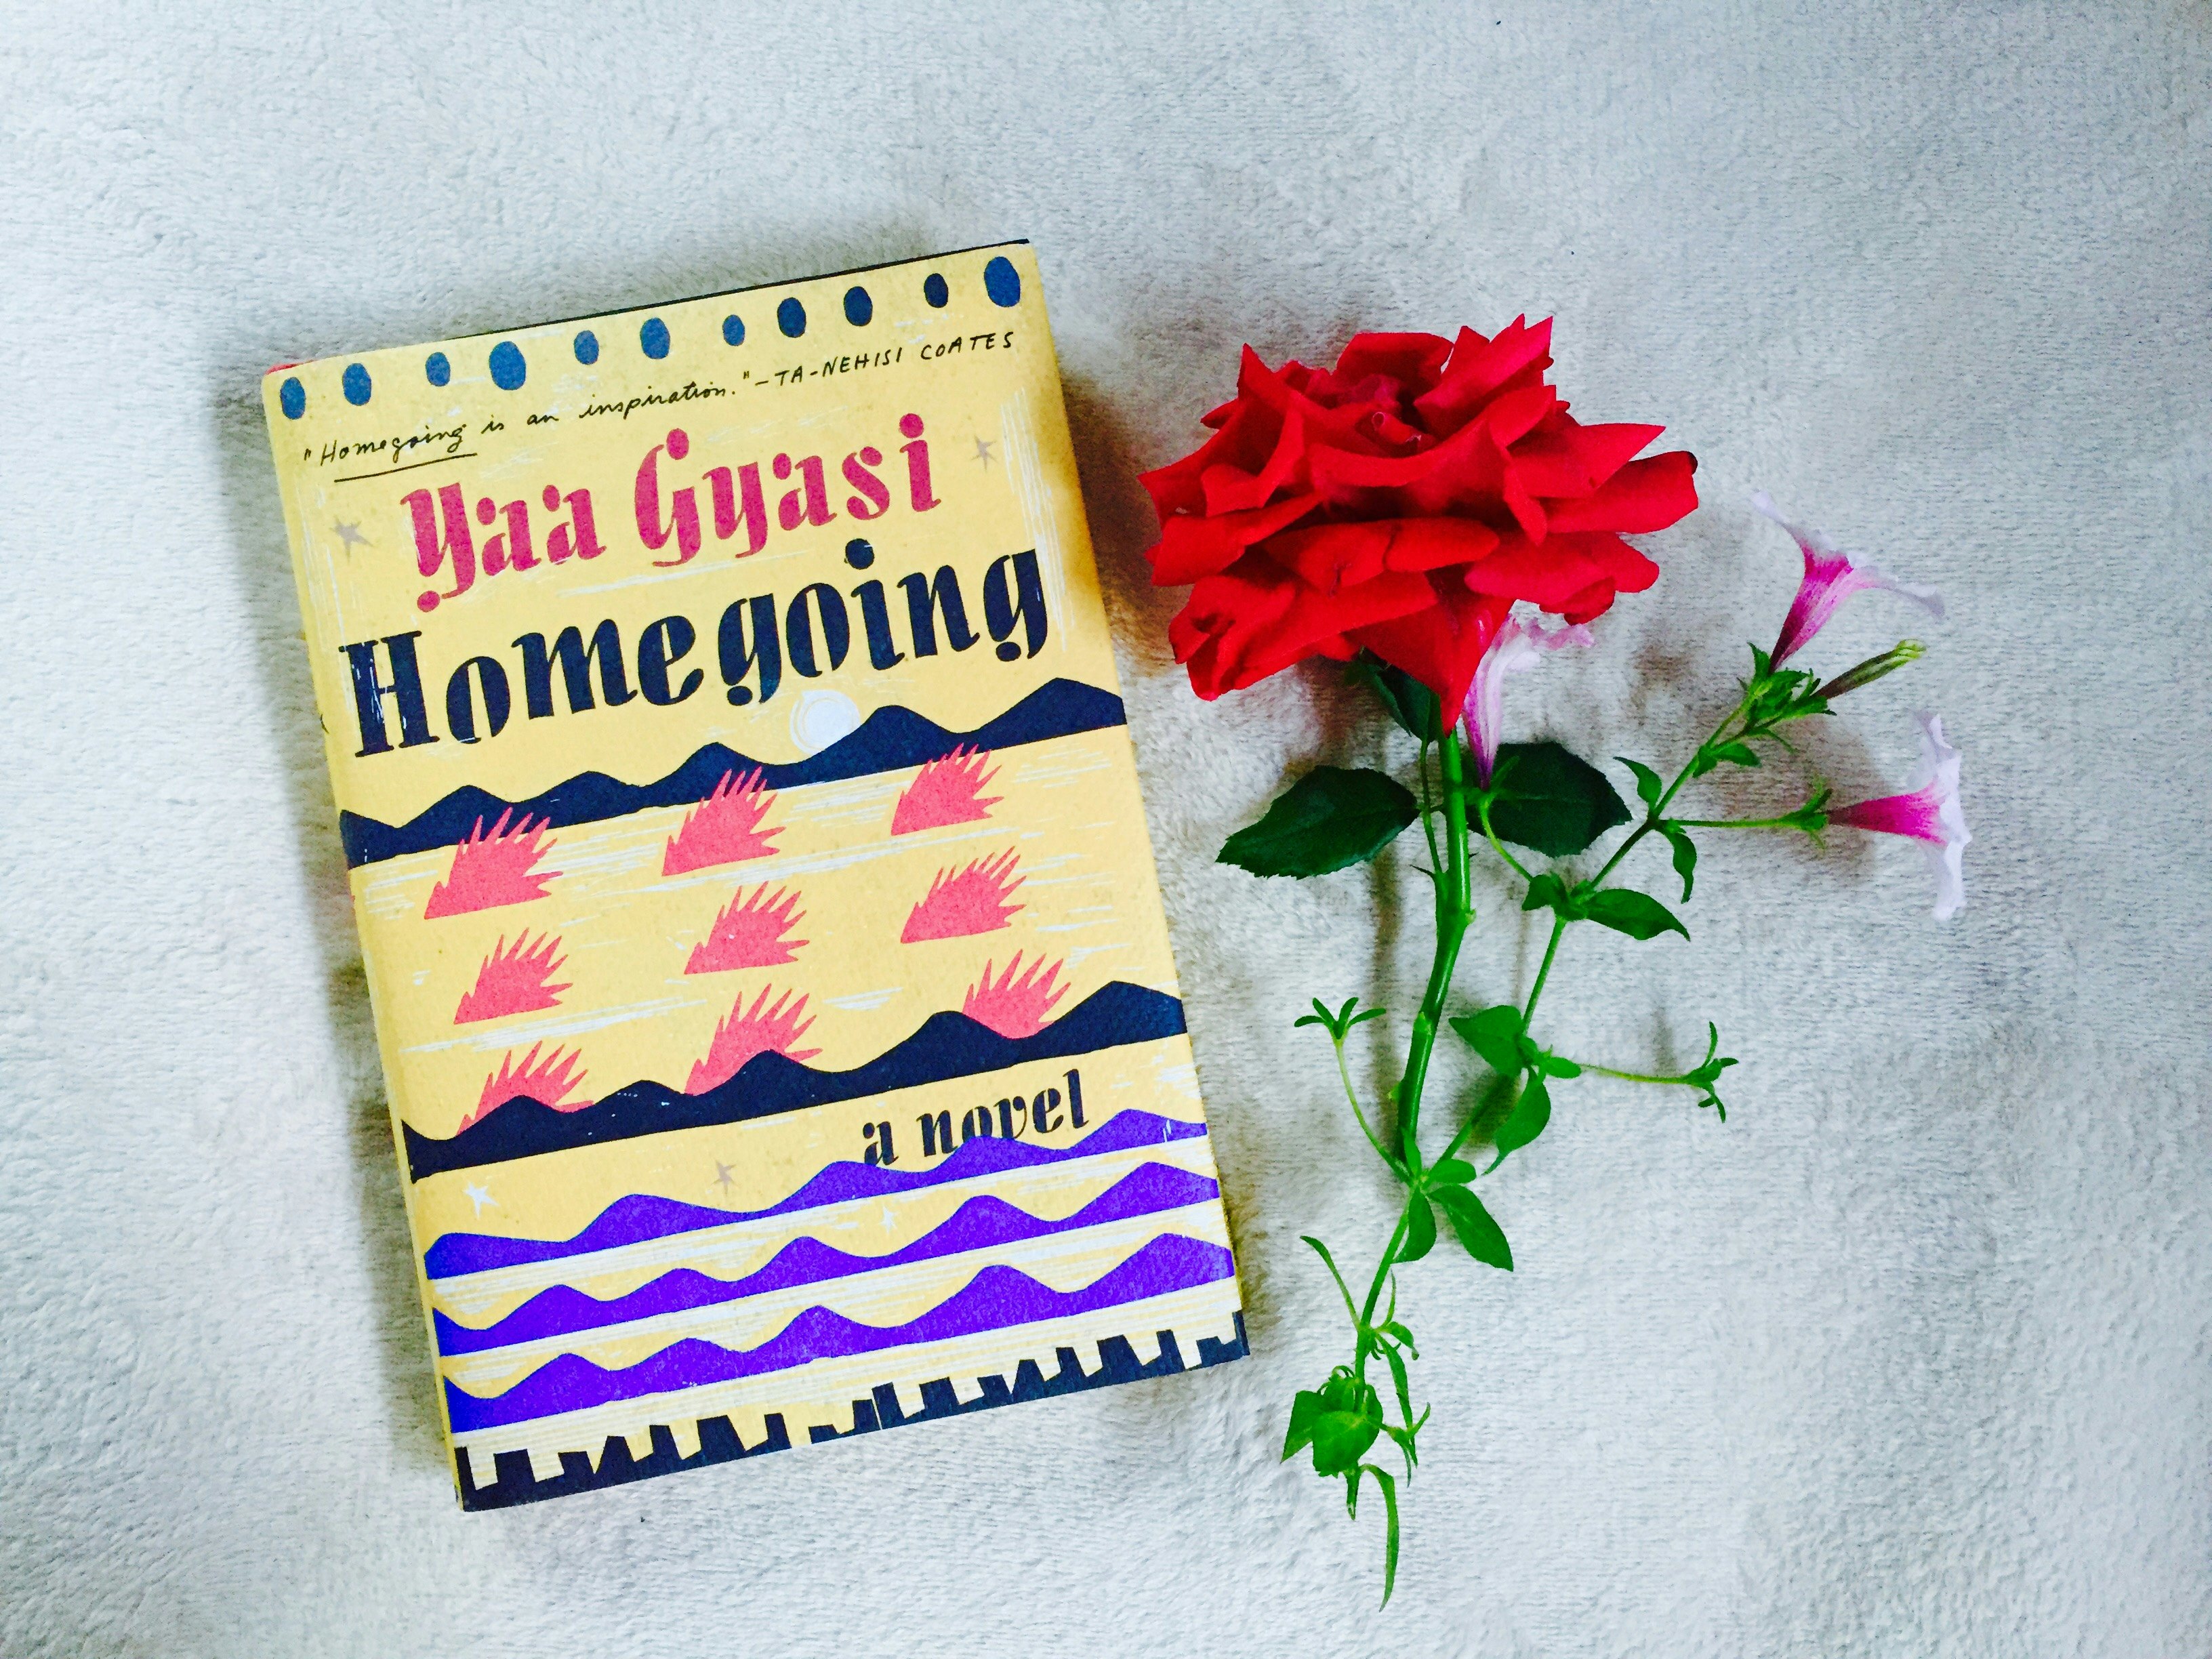 Homegoing A novel